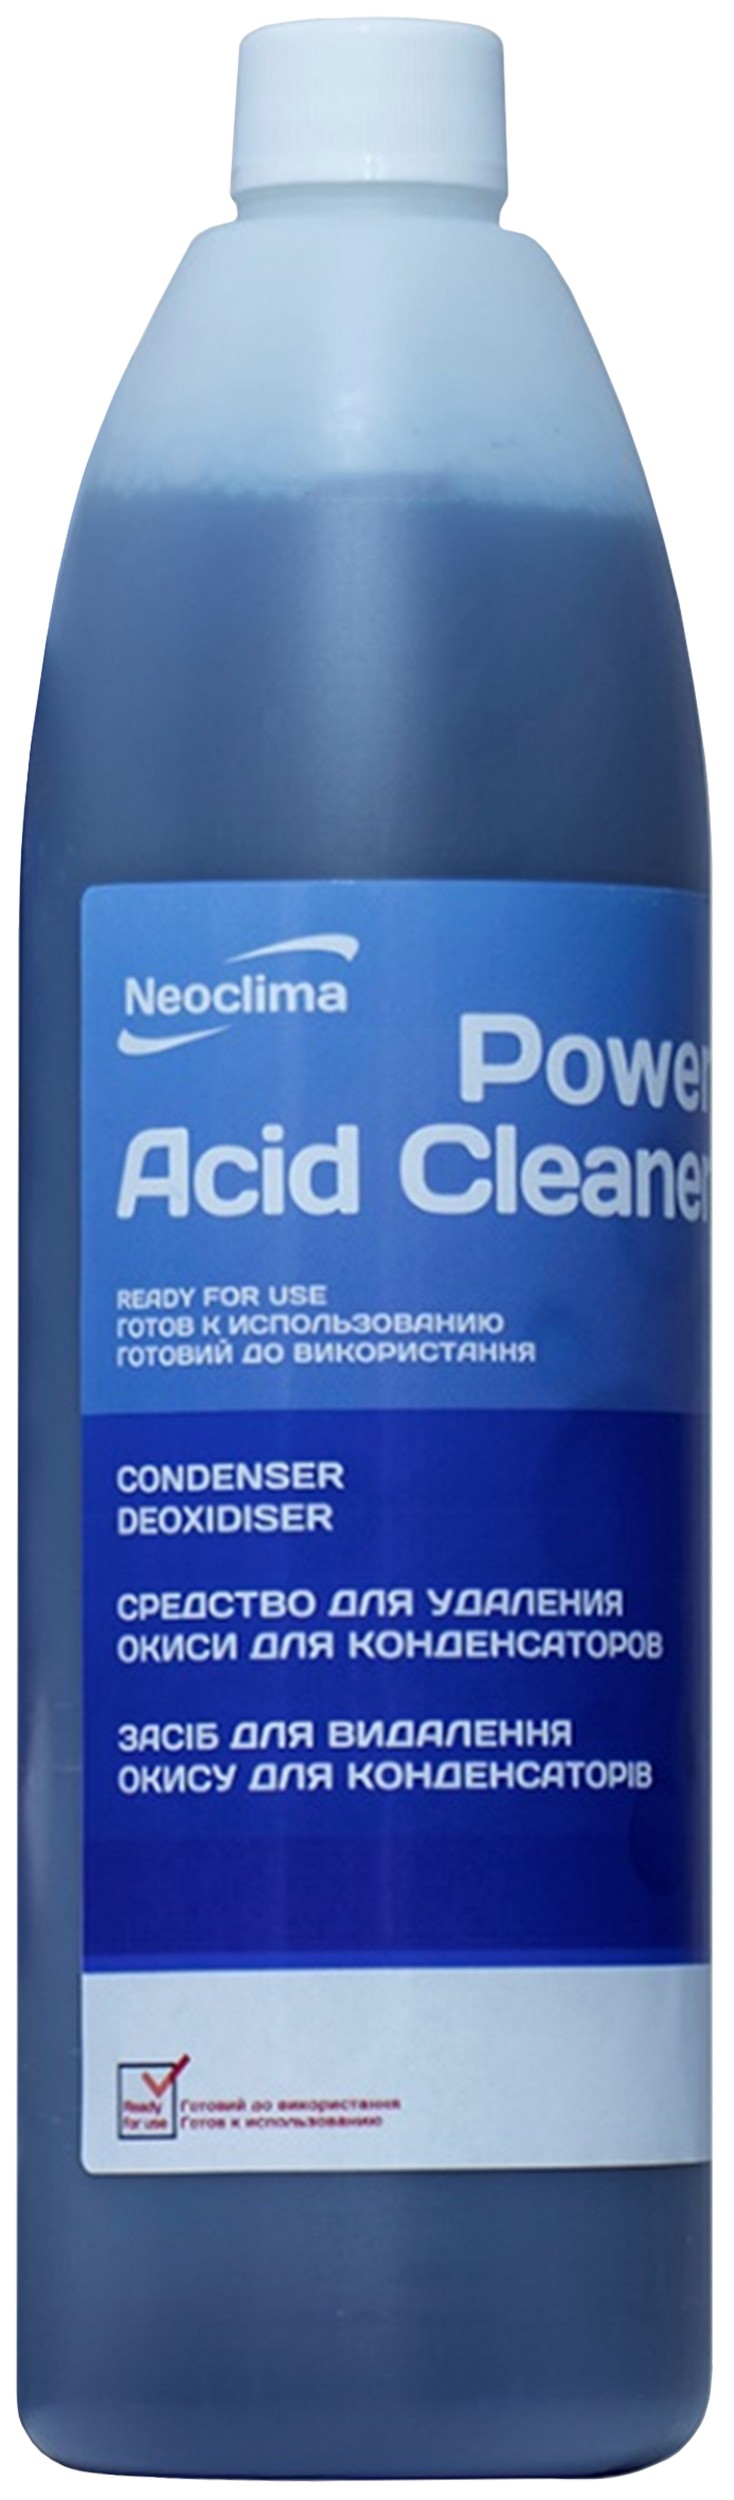 Цена очиститель внешнего блока Neoclima Power Acid Cleaner 1 л, спрей в Днепре